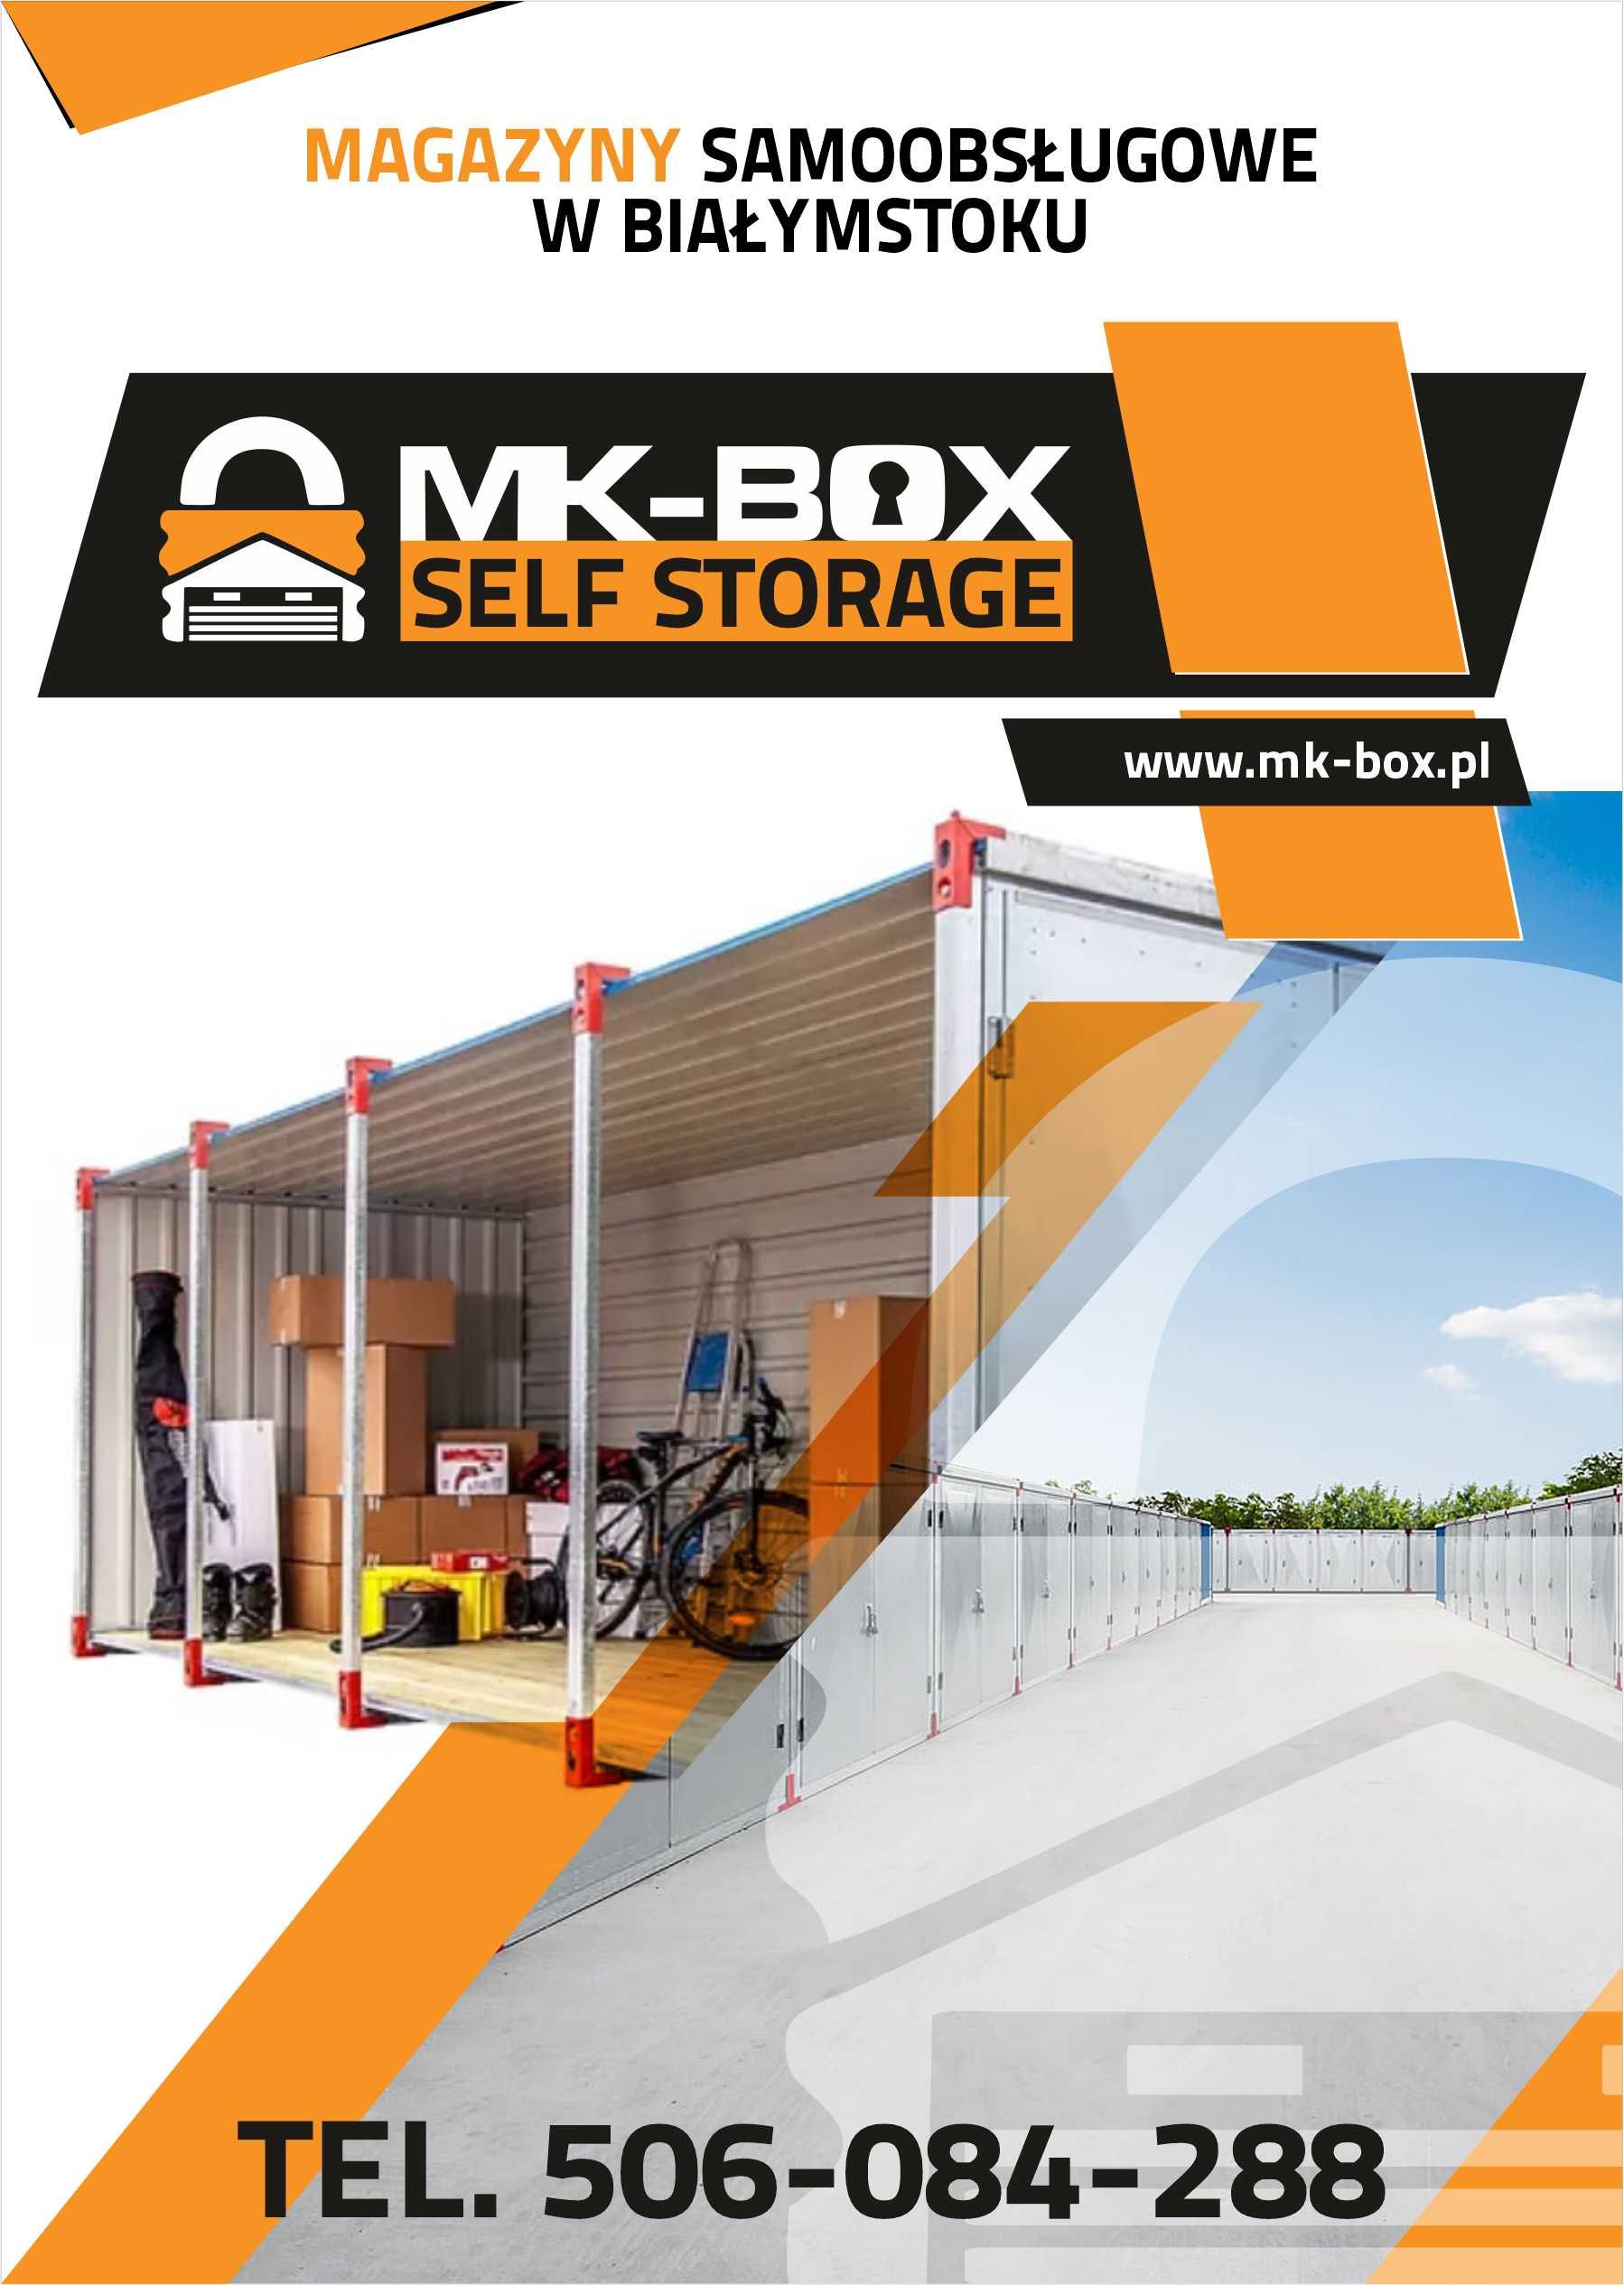 Samoobsługowe mini magazyny 24/7 przechowalnia garaż self storage